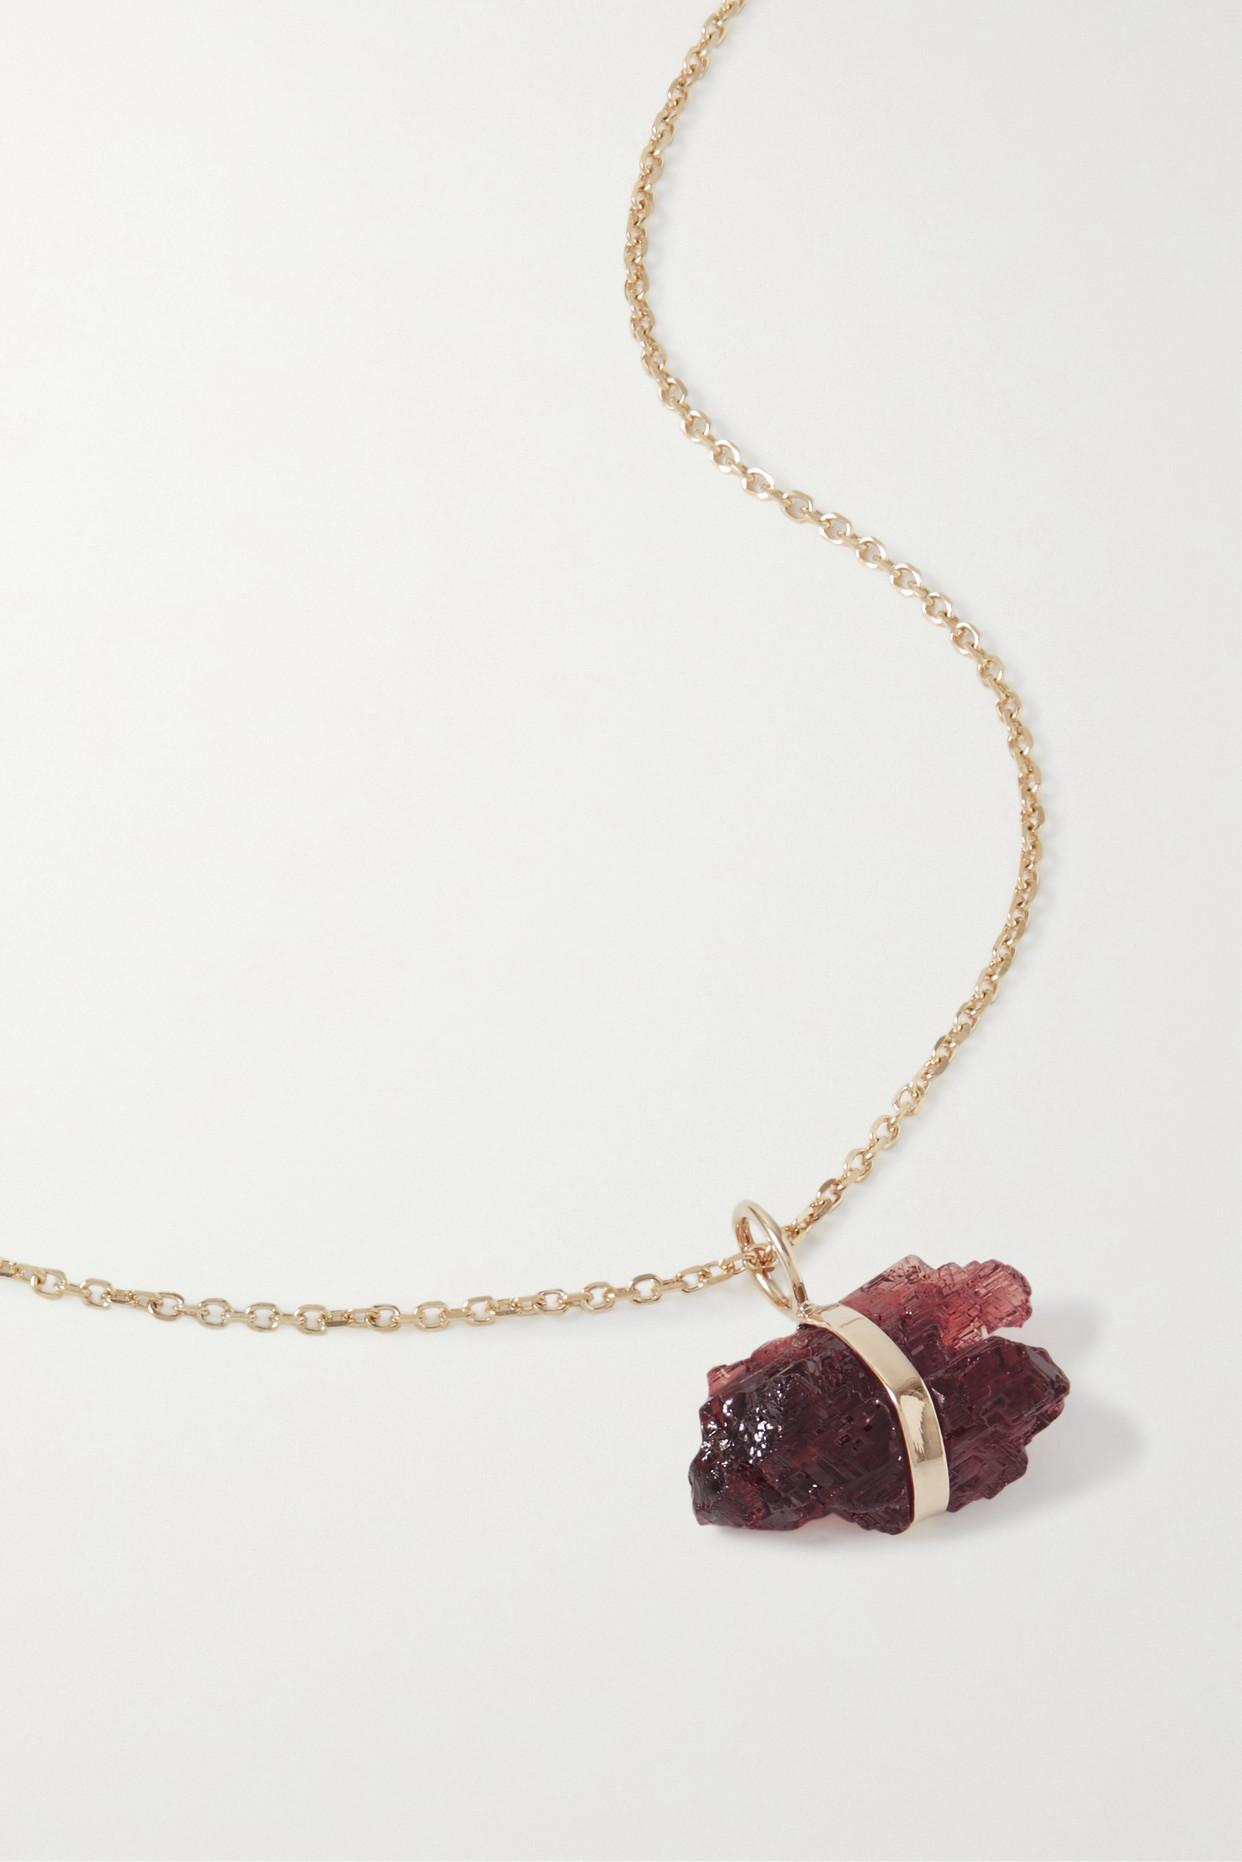 Burgundy Crystal & Garnet Pearl Necklace – Giavan